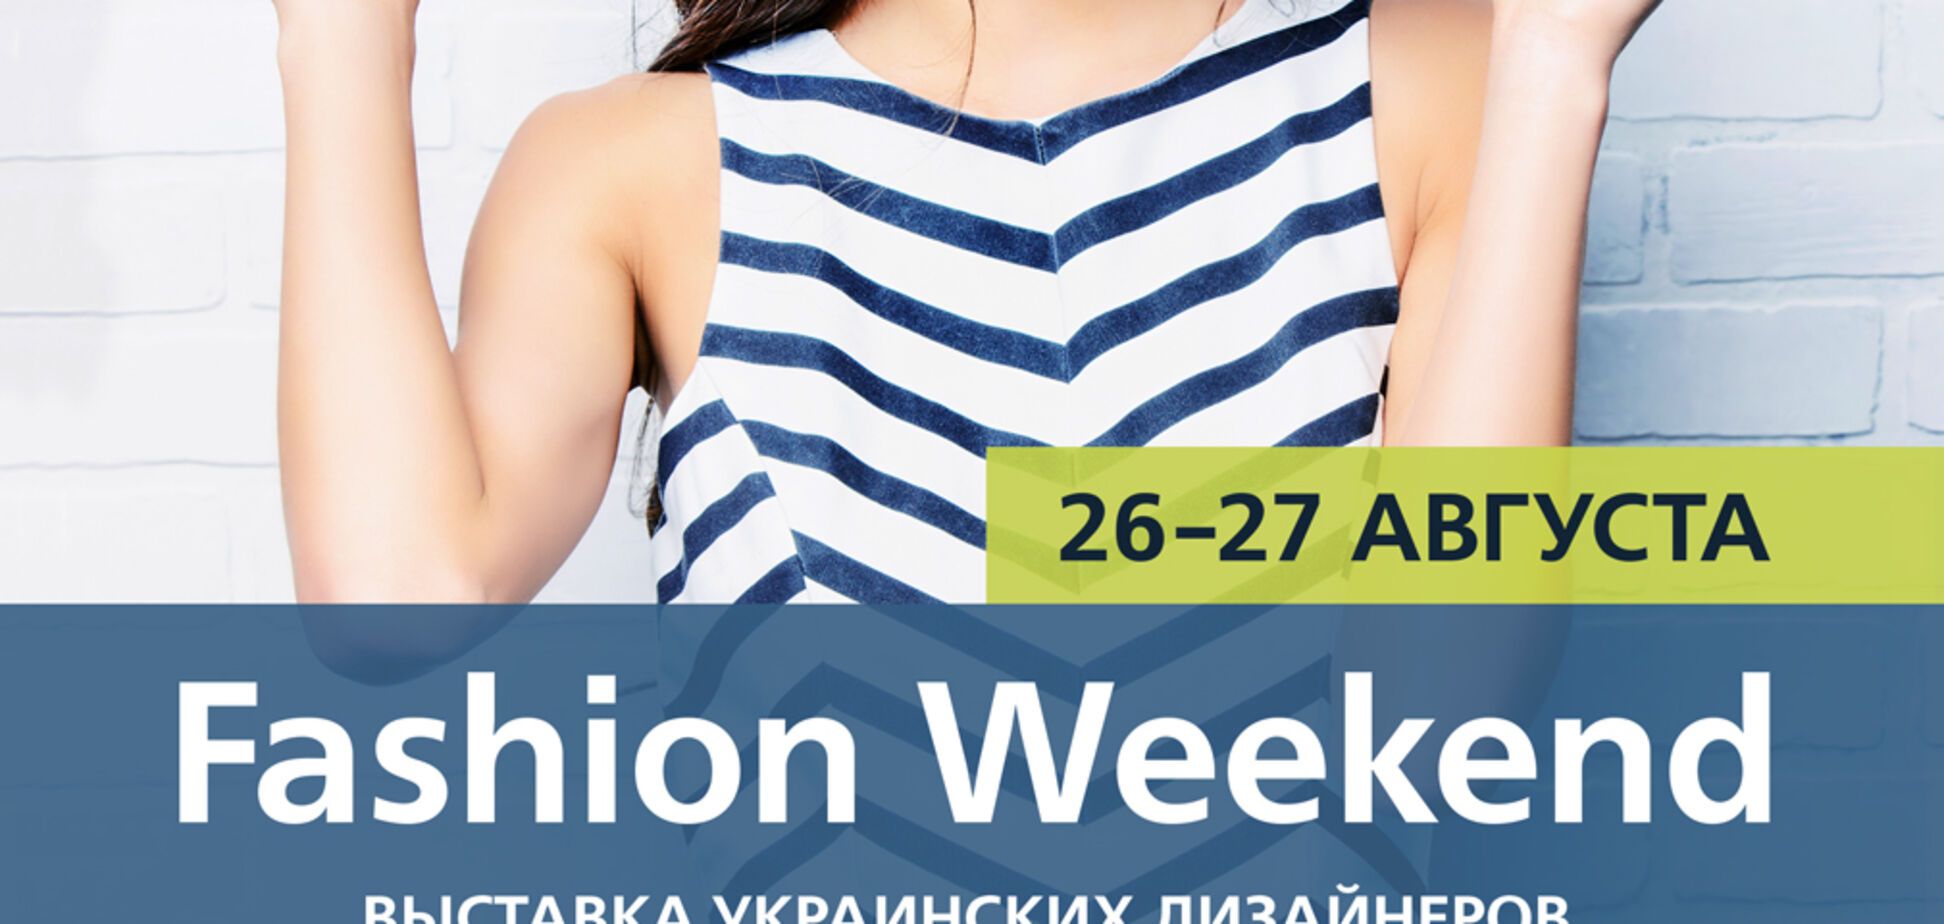 Fashion Weekend с украинскими дизайнерами пройдет в ТРЦ Среднефонтанский 